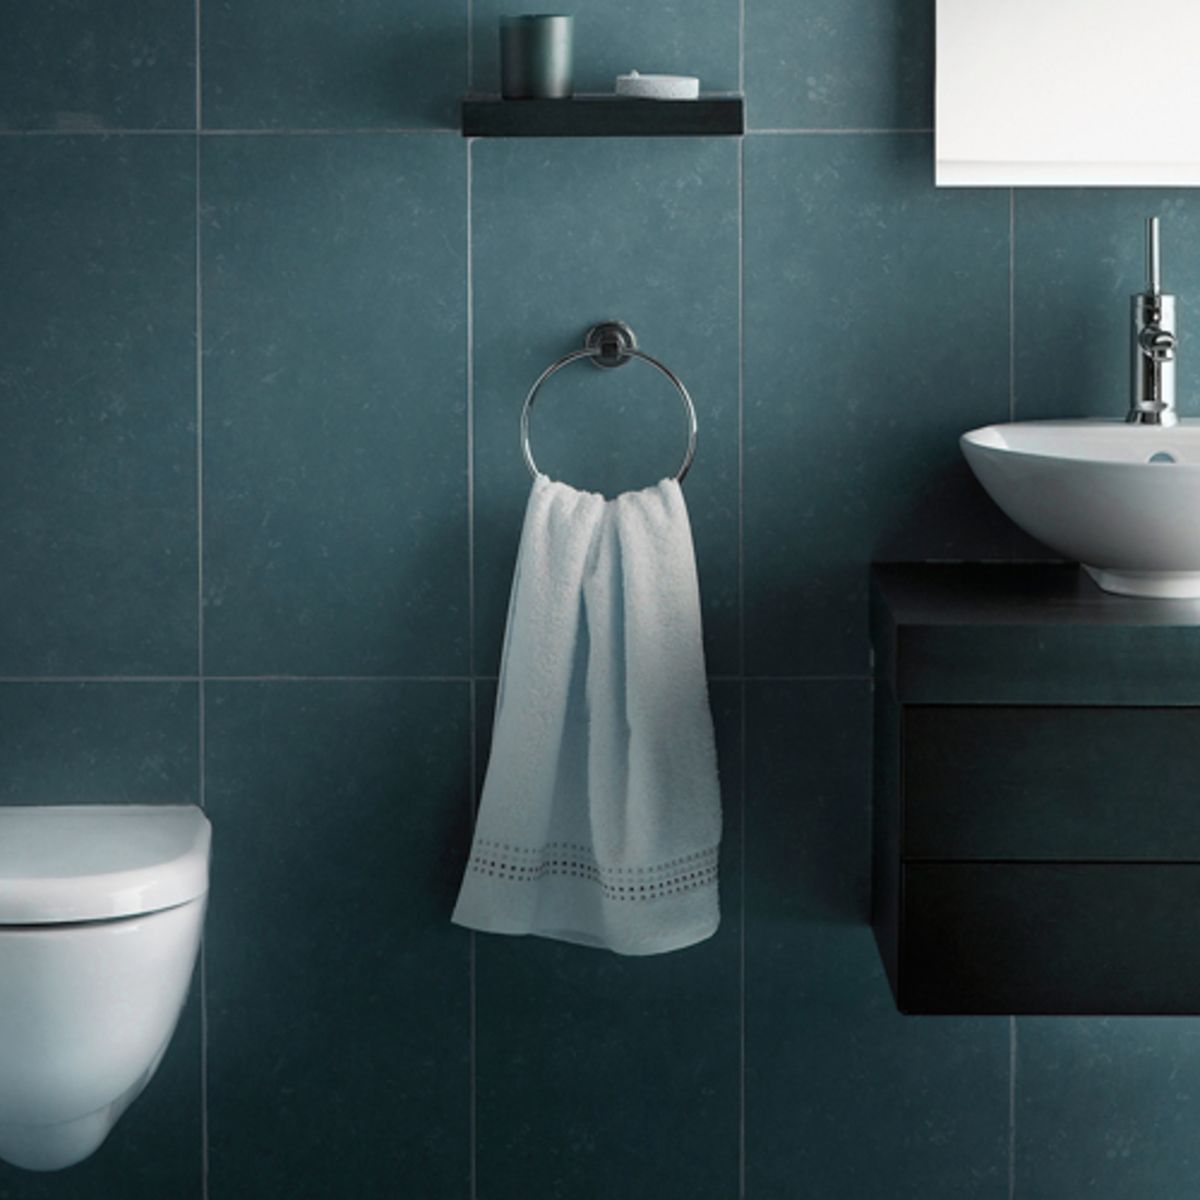 De Kamer Malaise mild 5 tips om je toilet zo groot mogelijk te maken